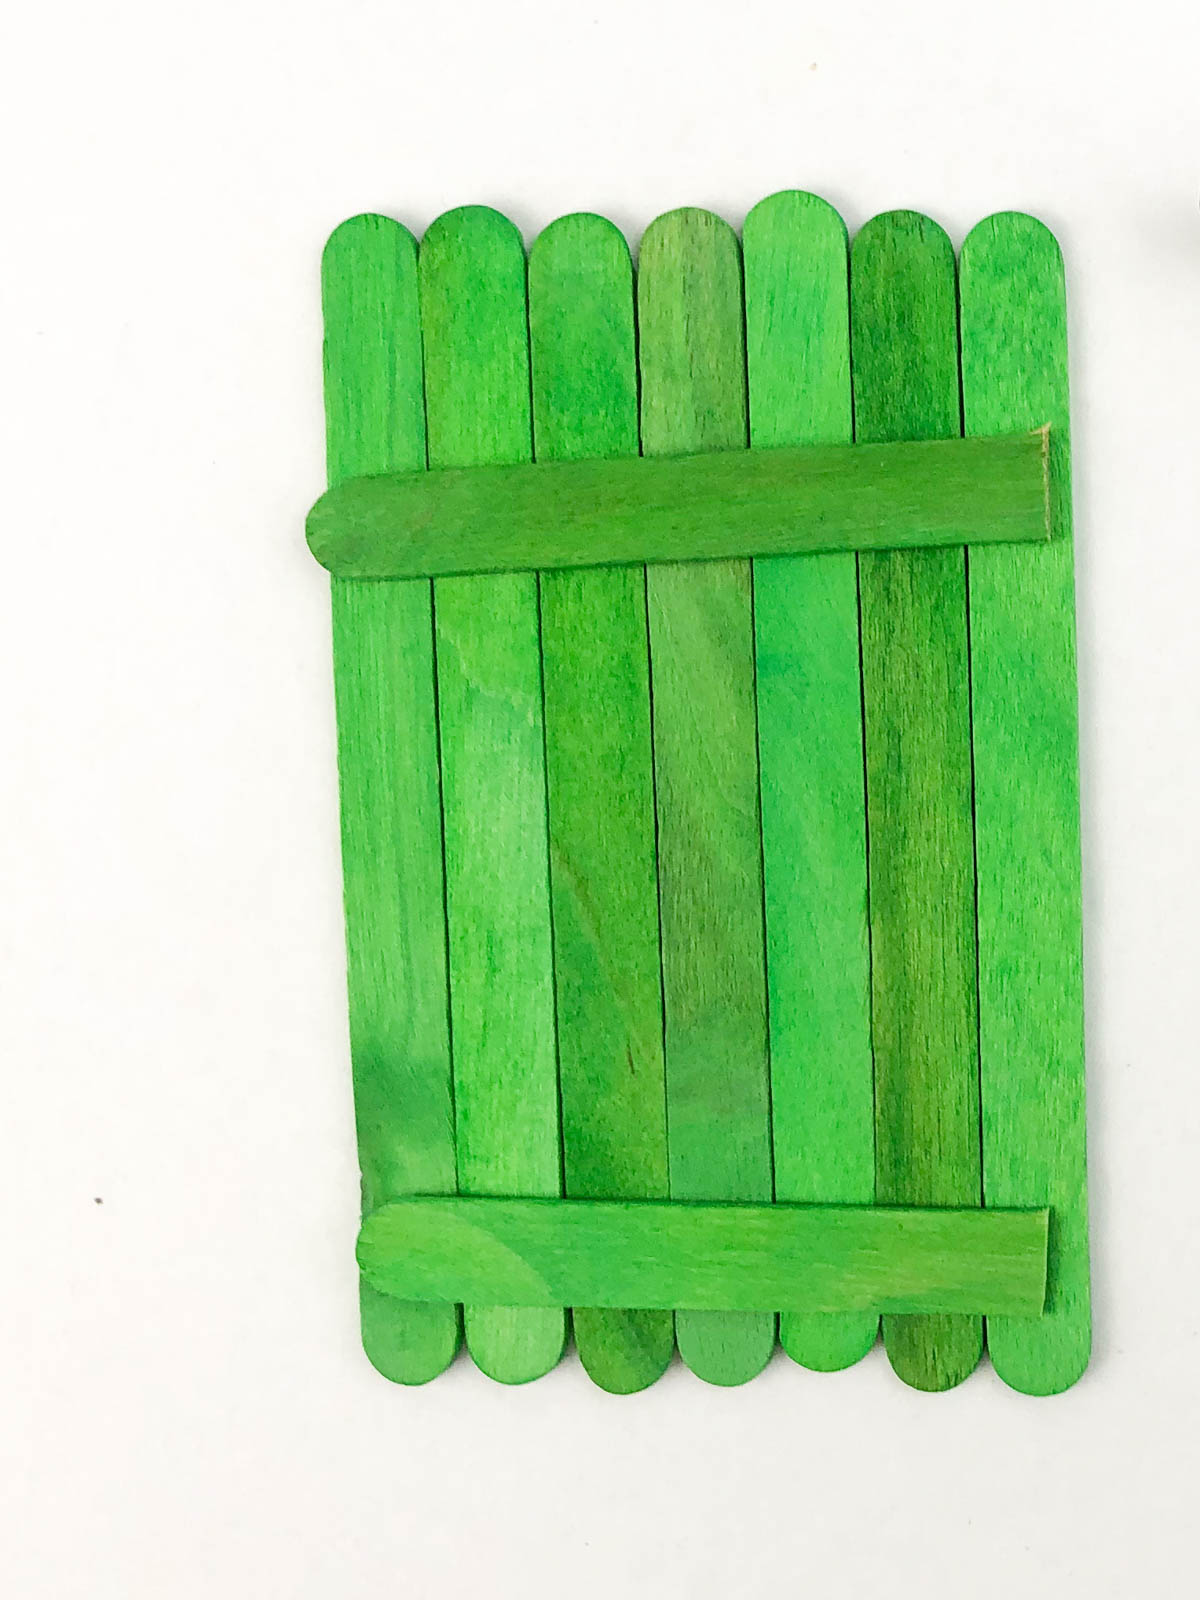 green craft sticks glued together